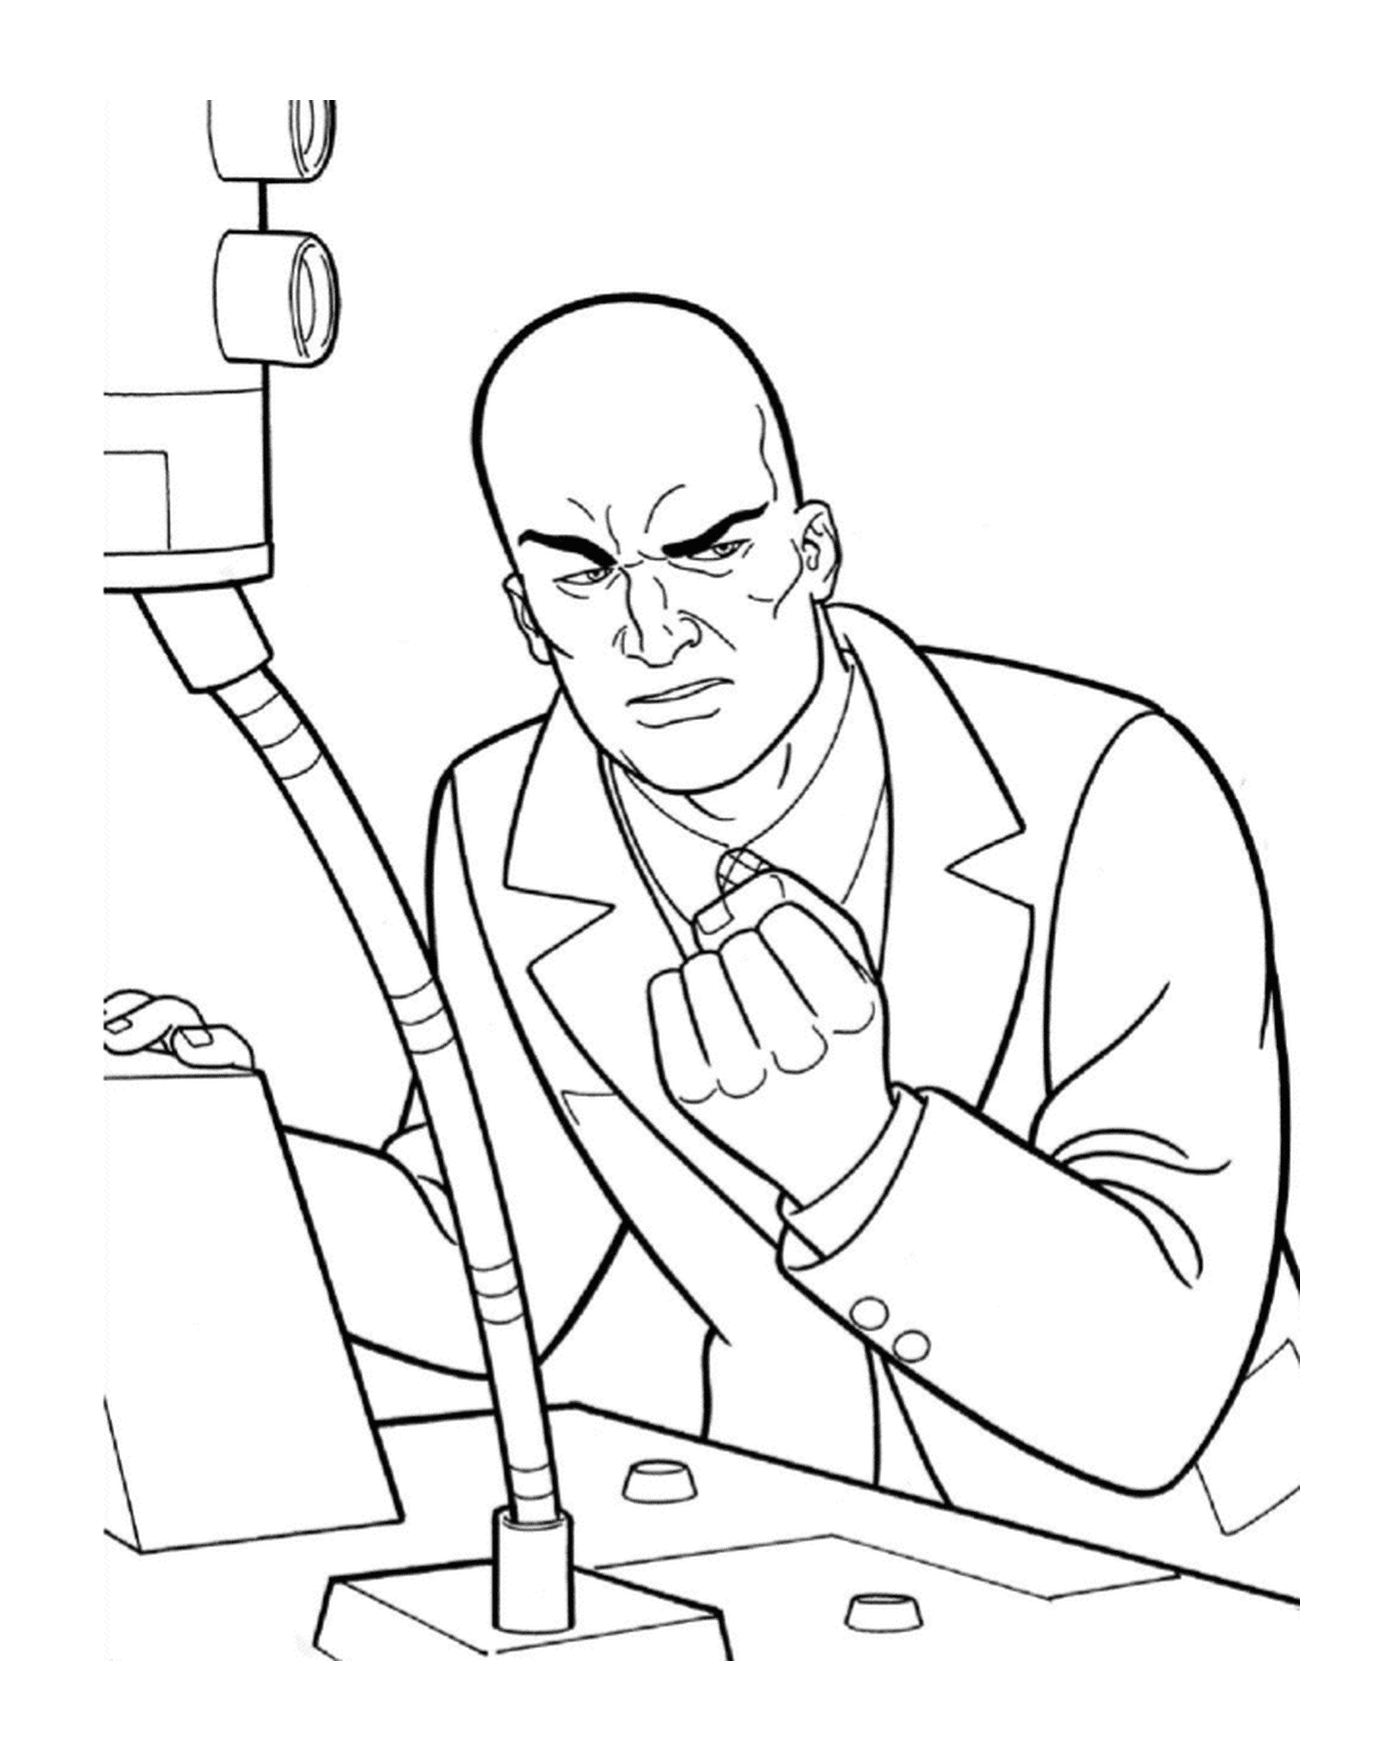  Lex Luthor, l'uomo d'affari 